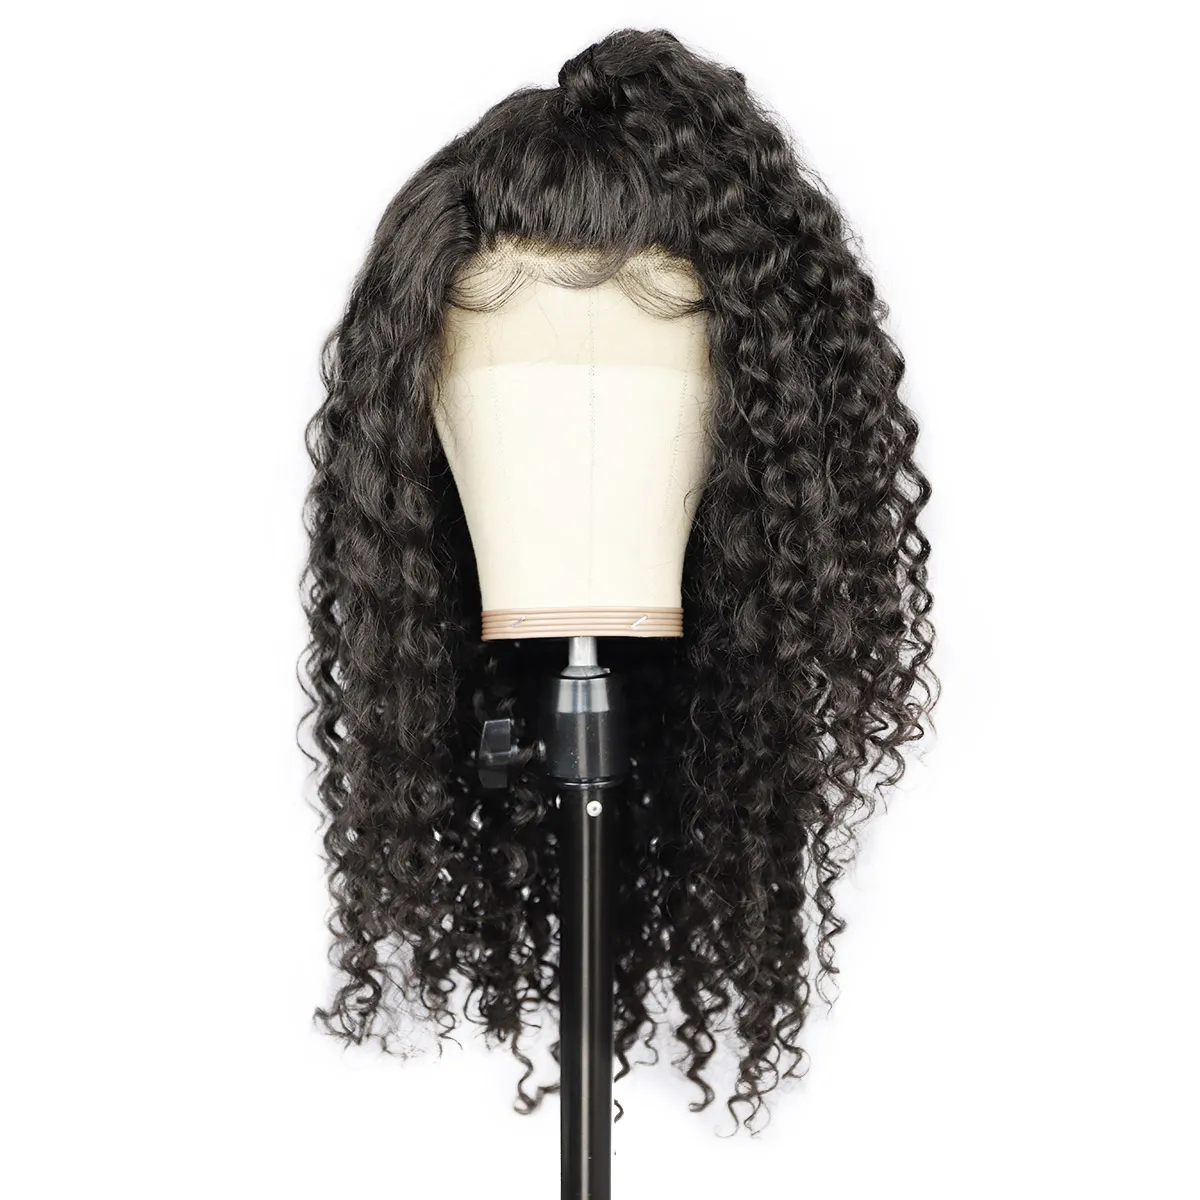 İnsan saçı dantel ön peruklar Brezilya derin dalga 13 4 orta boy wig302w